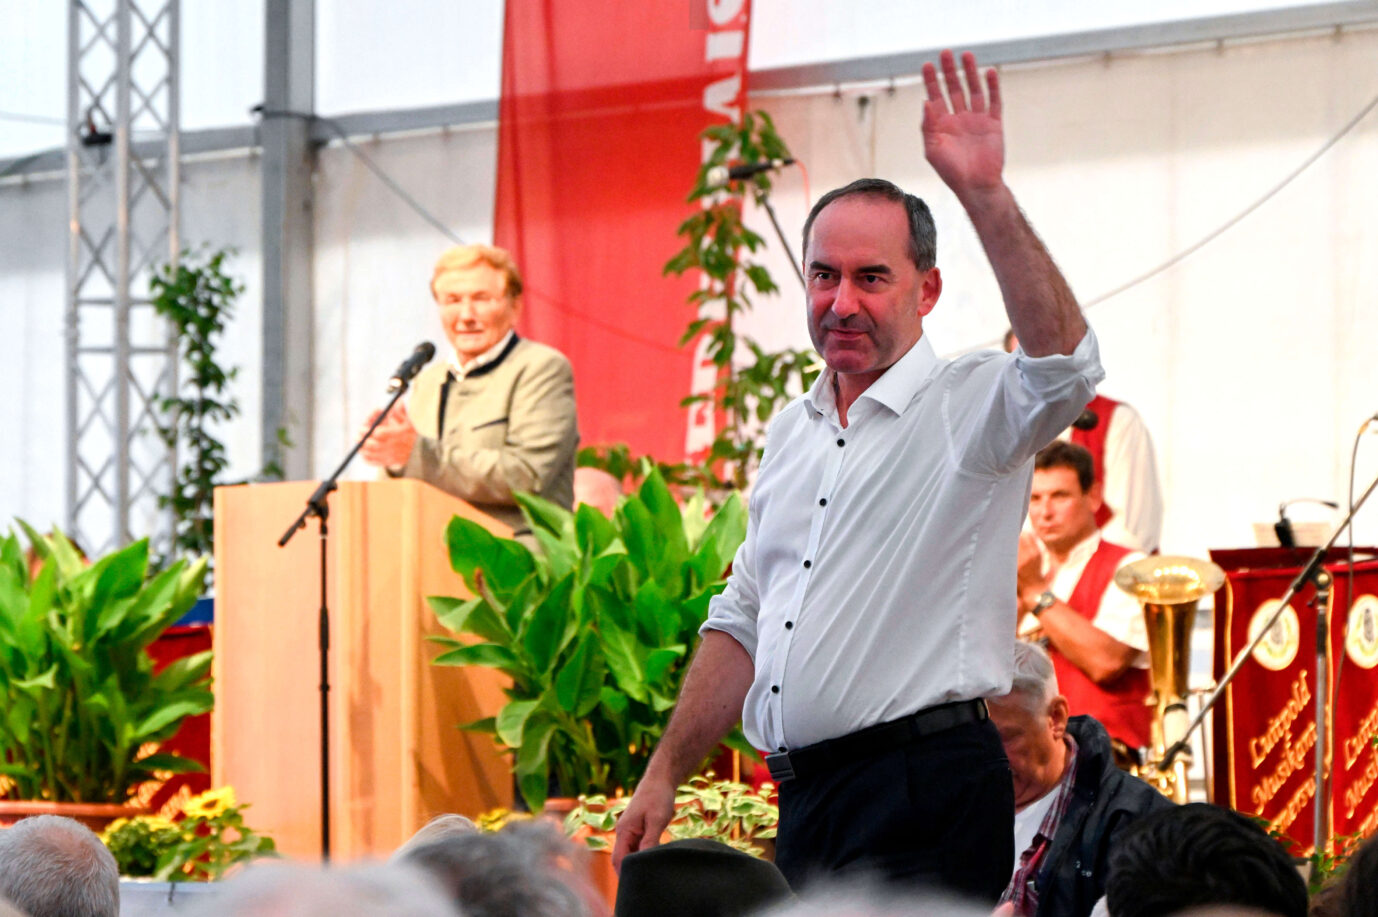 Der bayerische Vize-Ministerpräsident, Hubert Aiwanger (vorne), bei einem politischen Abend der Freien Wähler im Festzelt auf einem Volksfest. Sein Bruder soll die Hetzschrift verfasst haben.